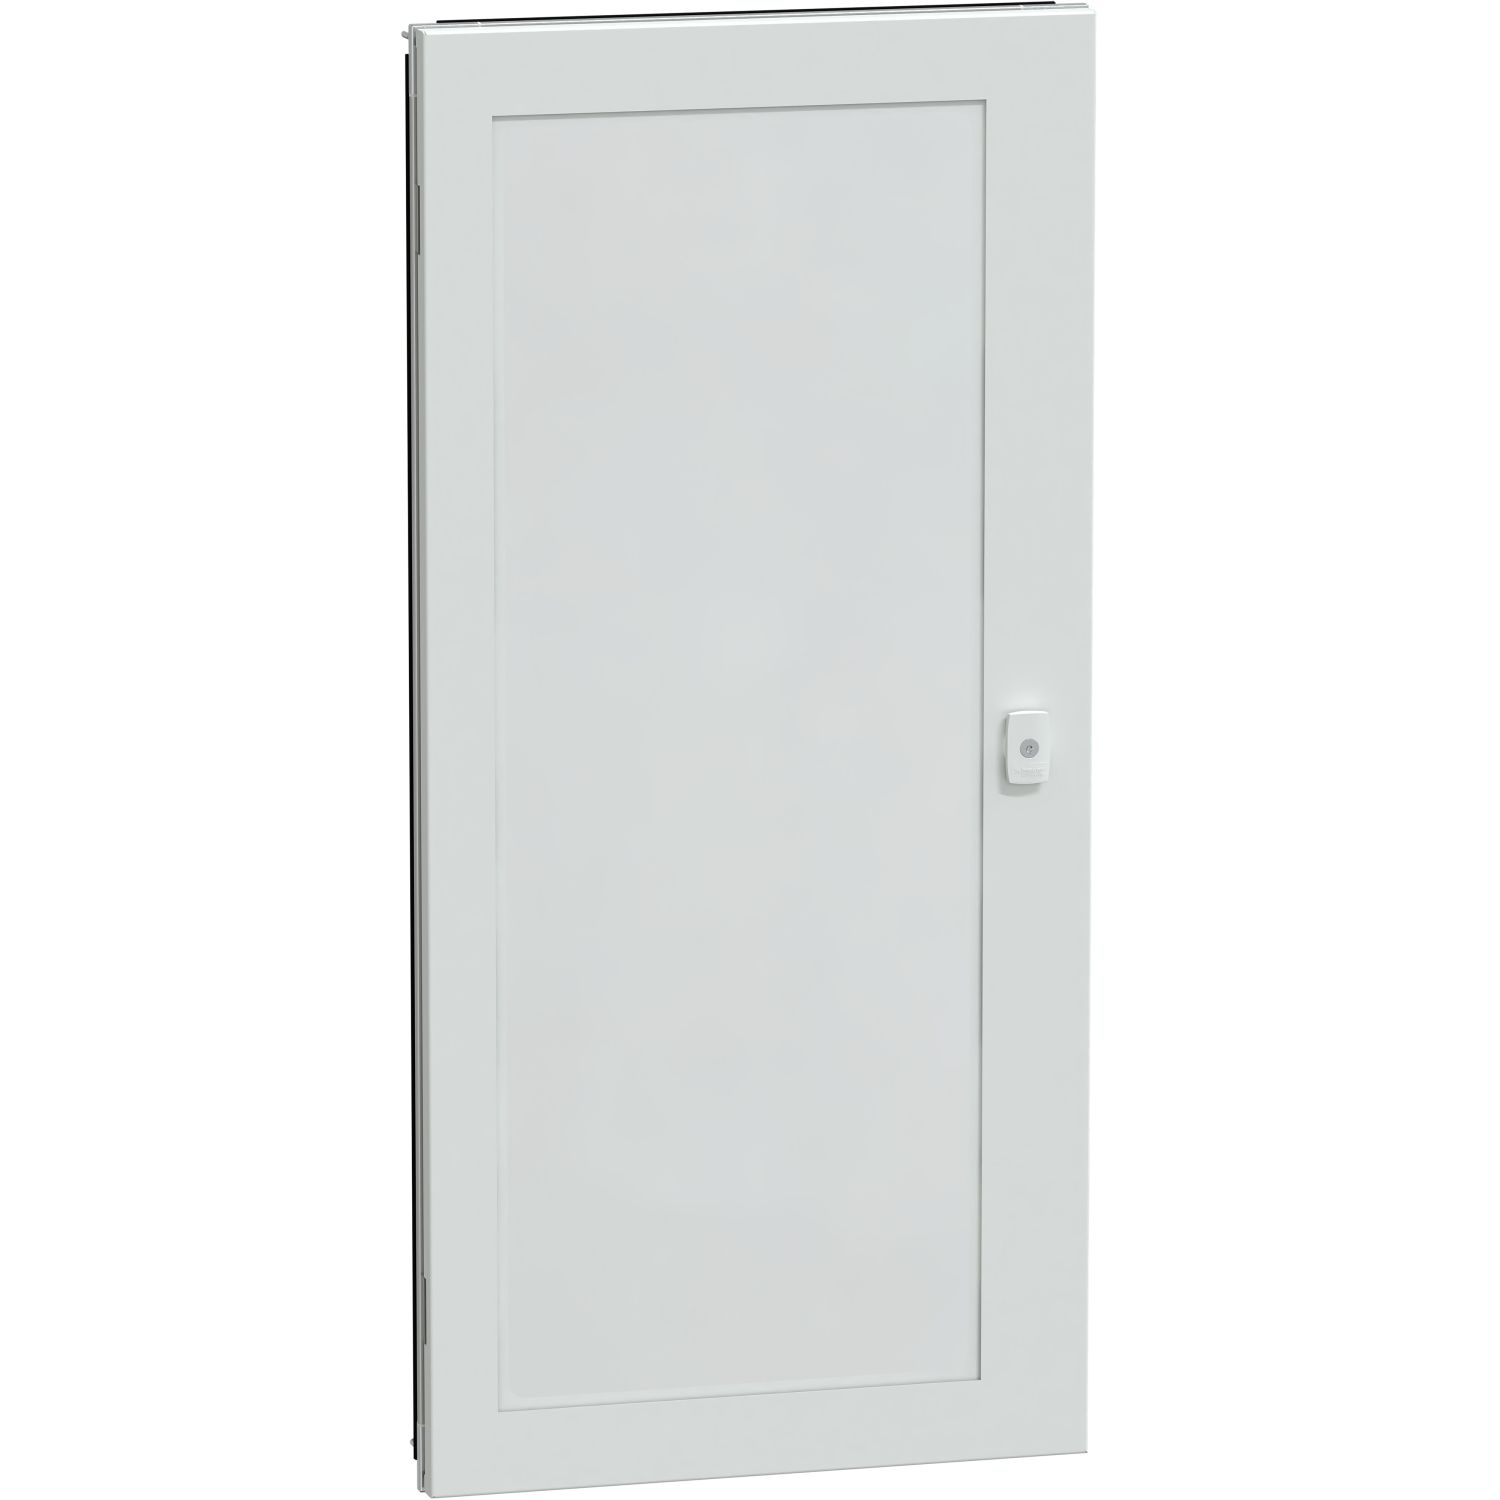 Átlátszó ajtó g szekrény IP55 23m